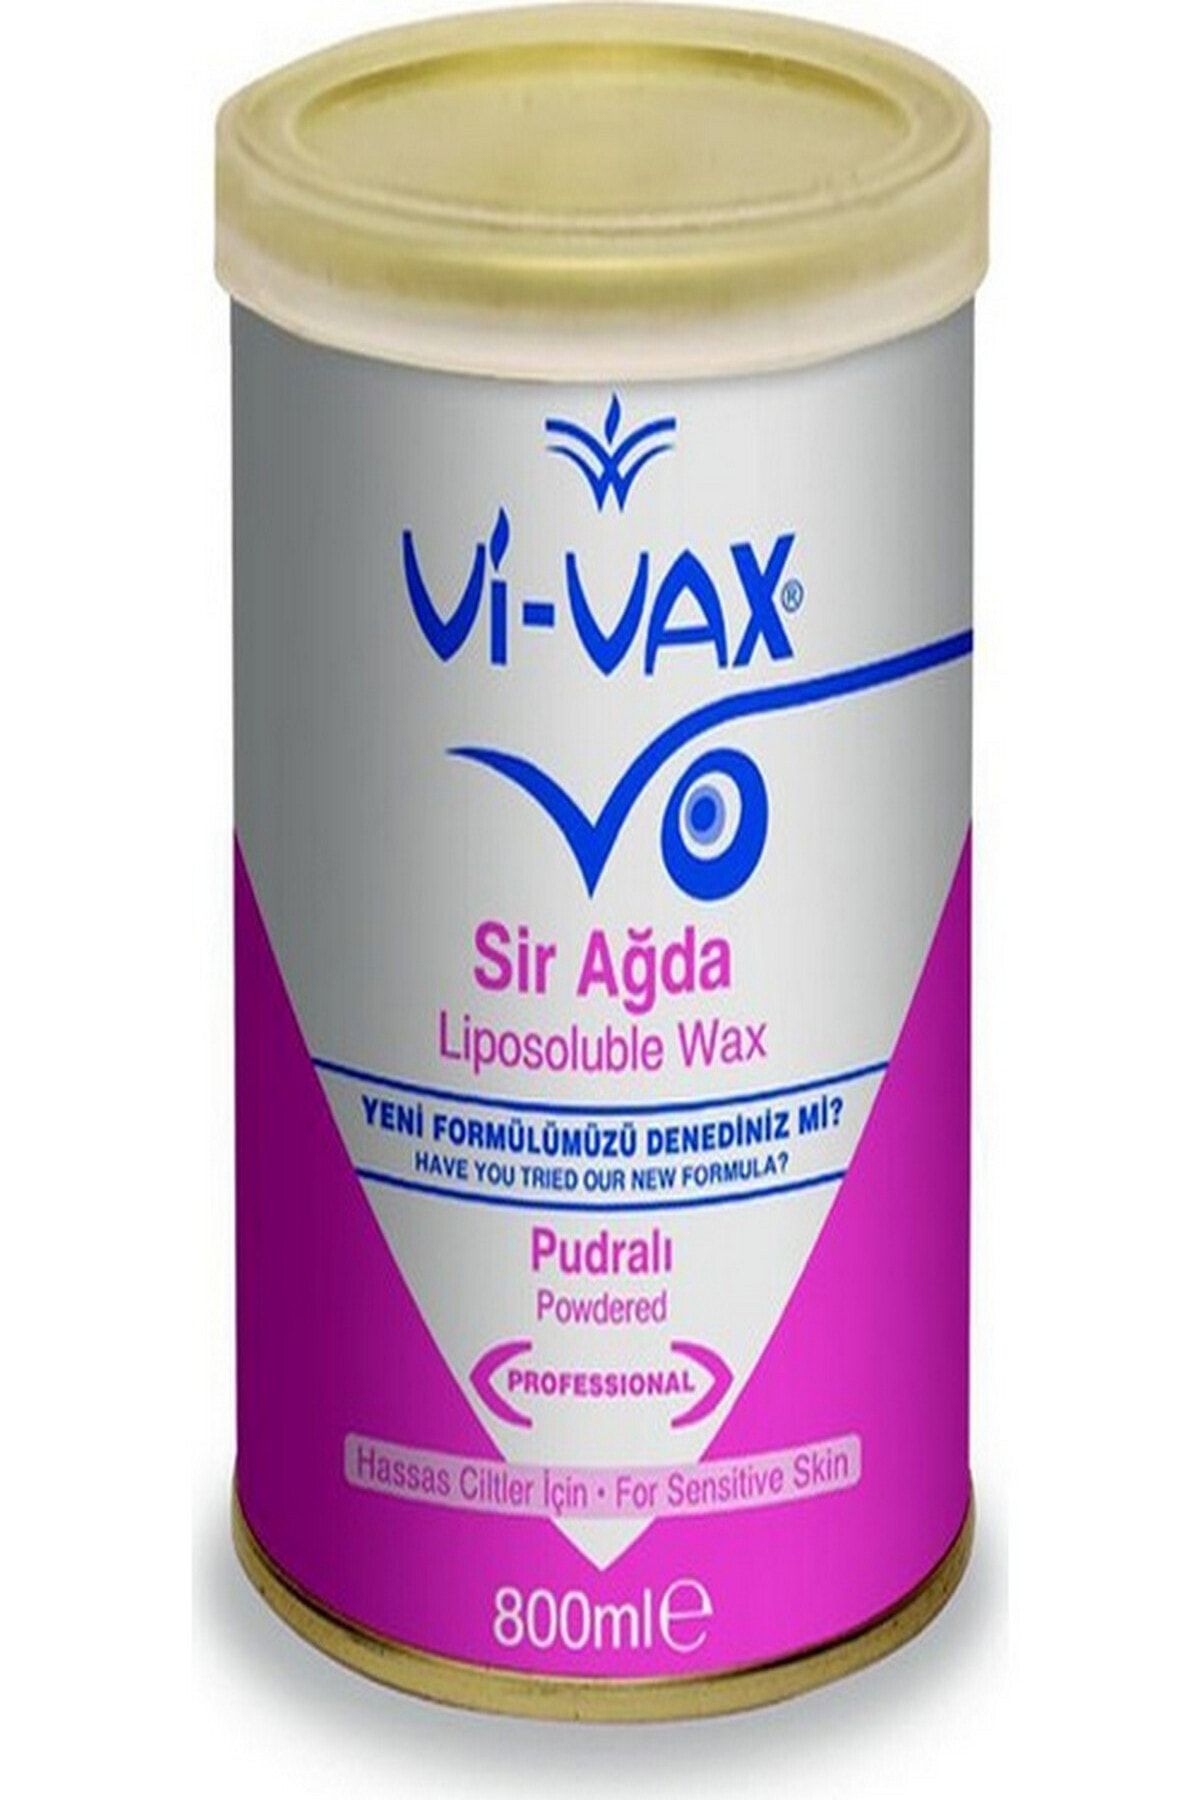 Vi vet Vivax Sir Ağda Pudralı 800ml